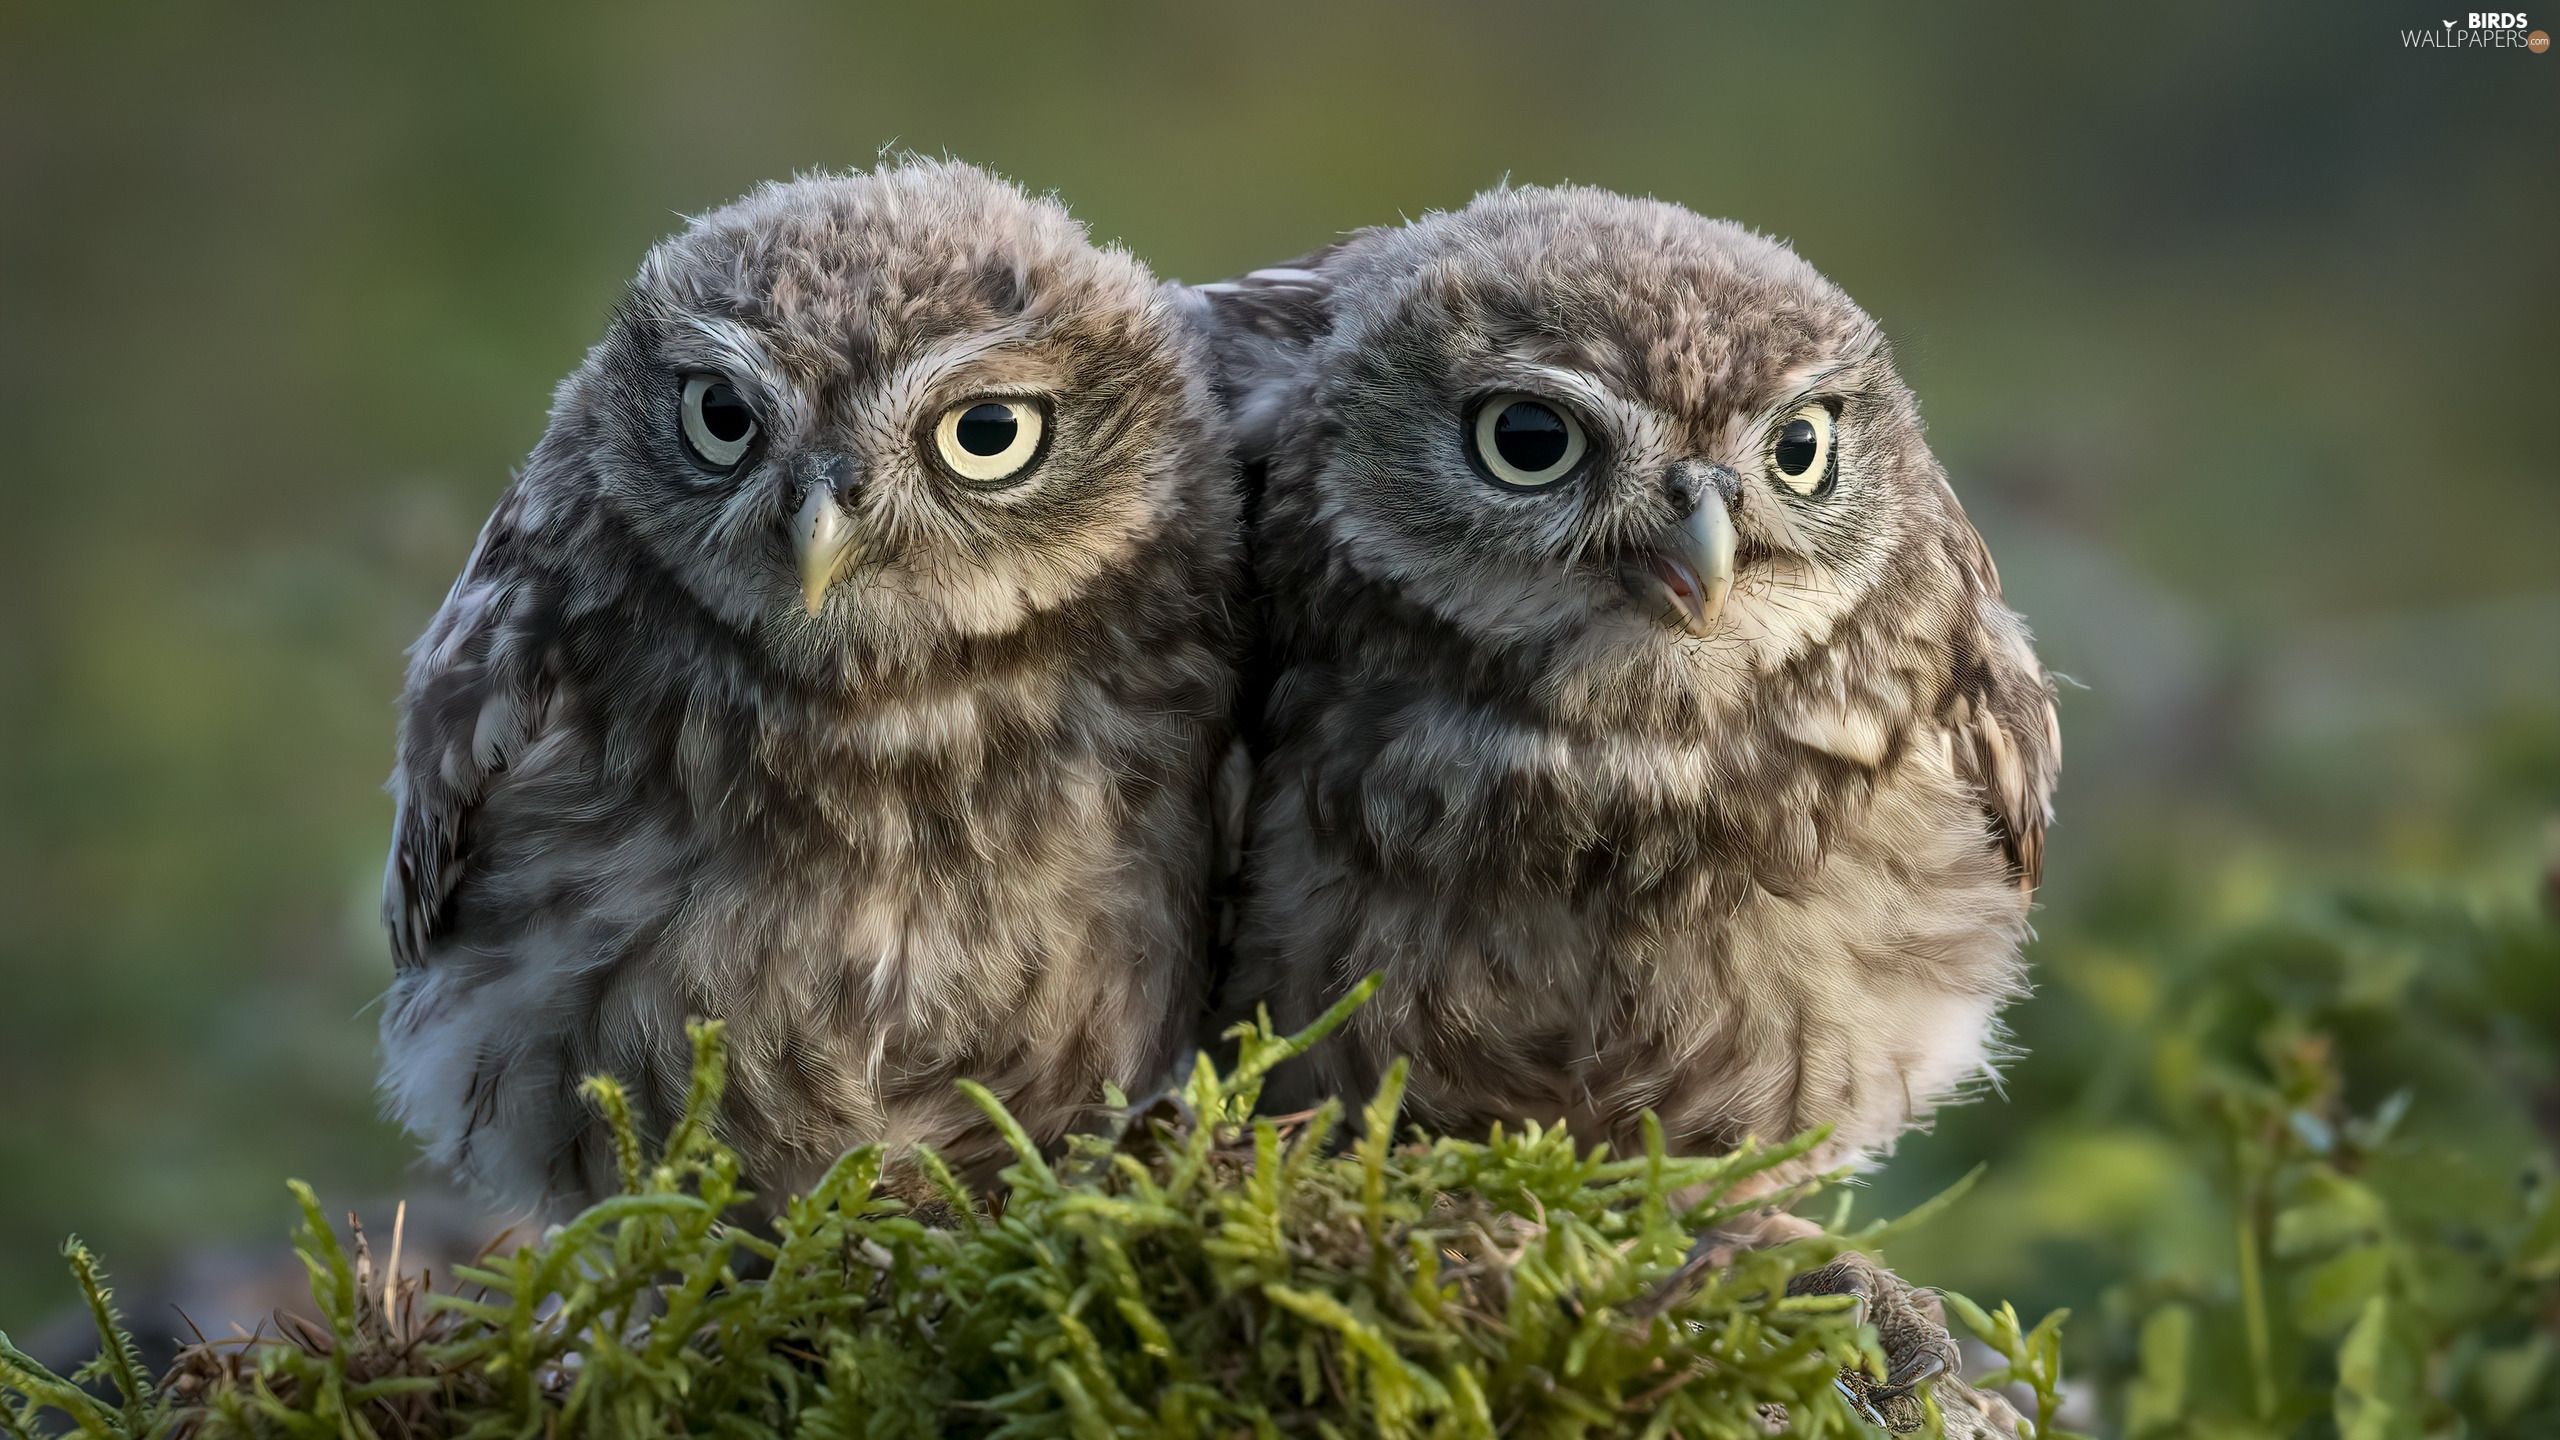 Two, Little Owl, Moss, Owls wallpaper: 2560x1440